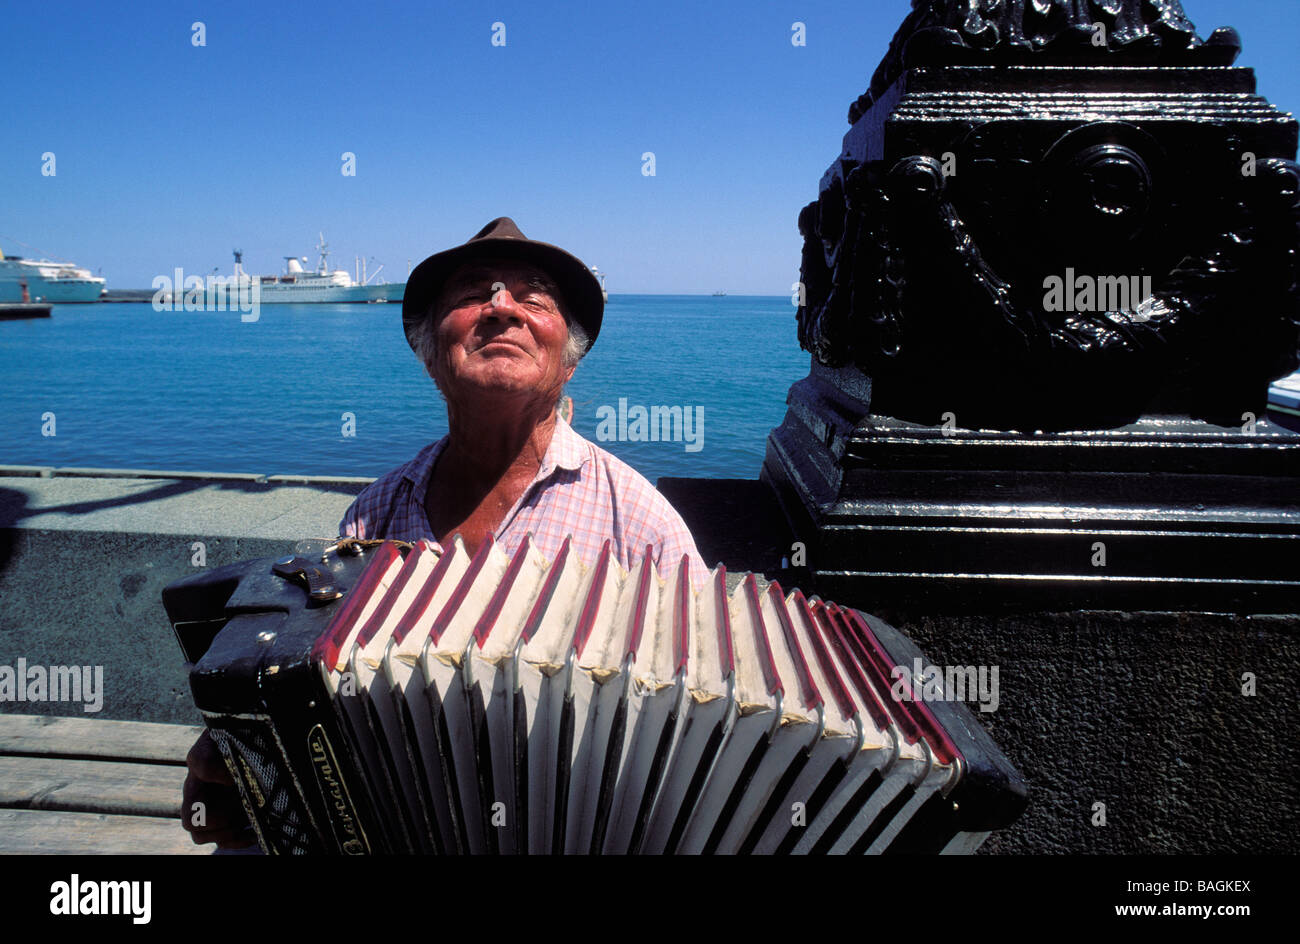 Ukraine, Crimea, Black Sea, Yalta, Ukrainian local musician Stock Photo